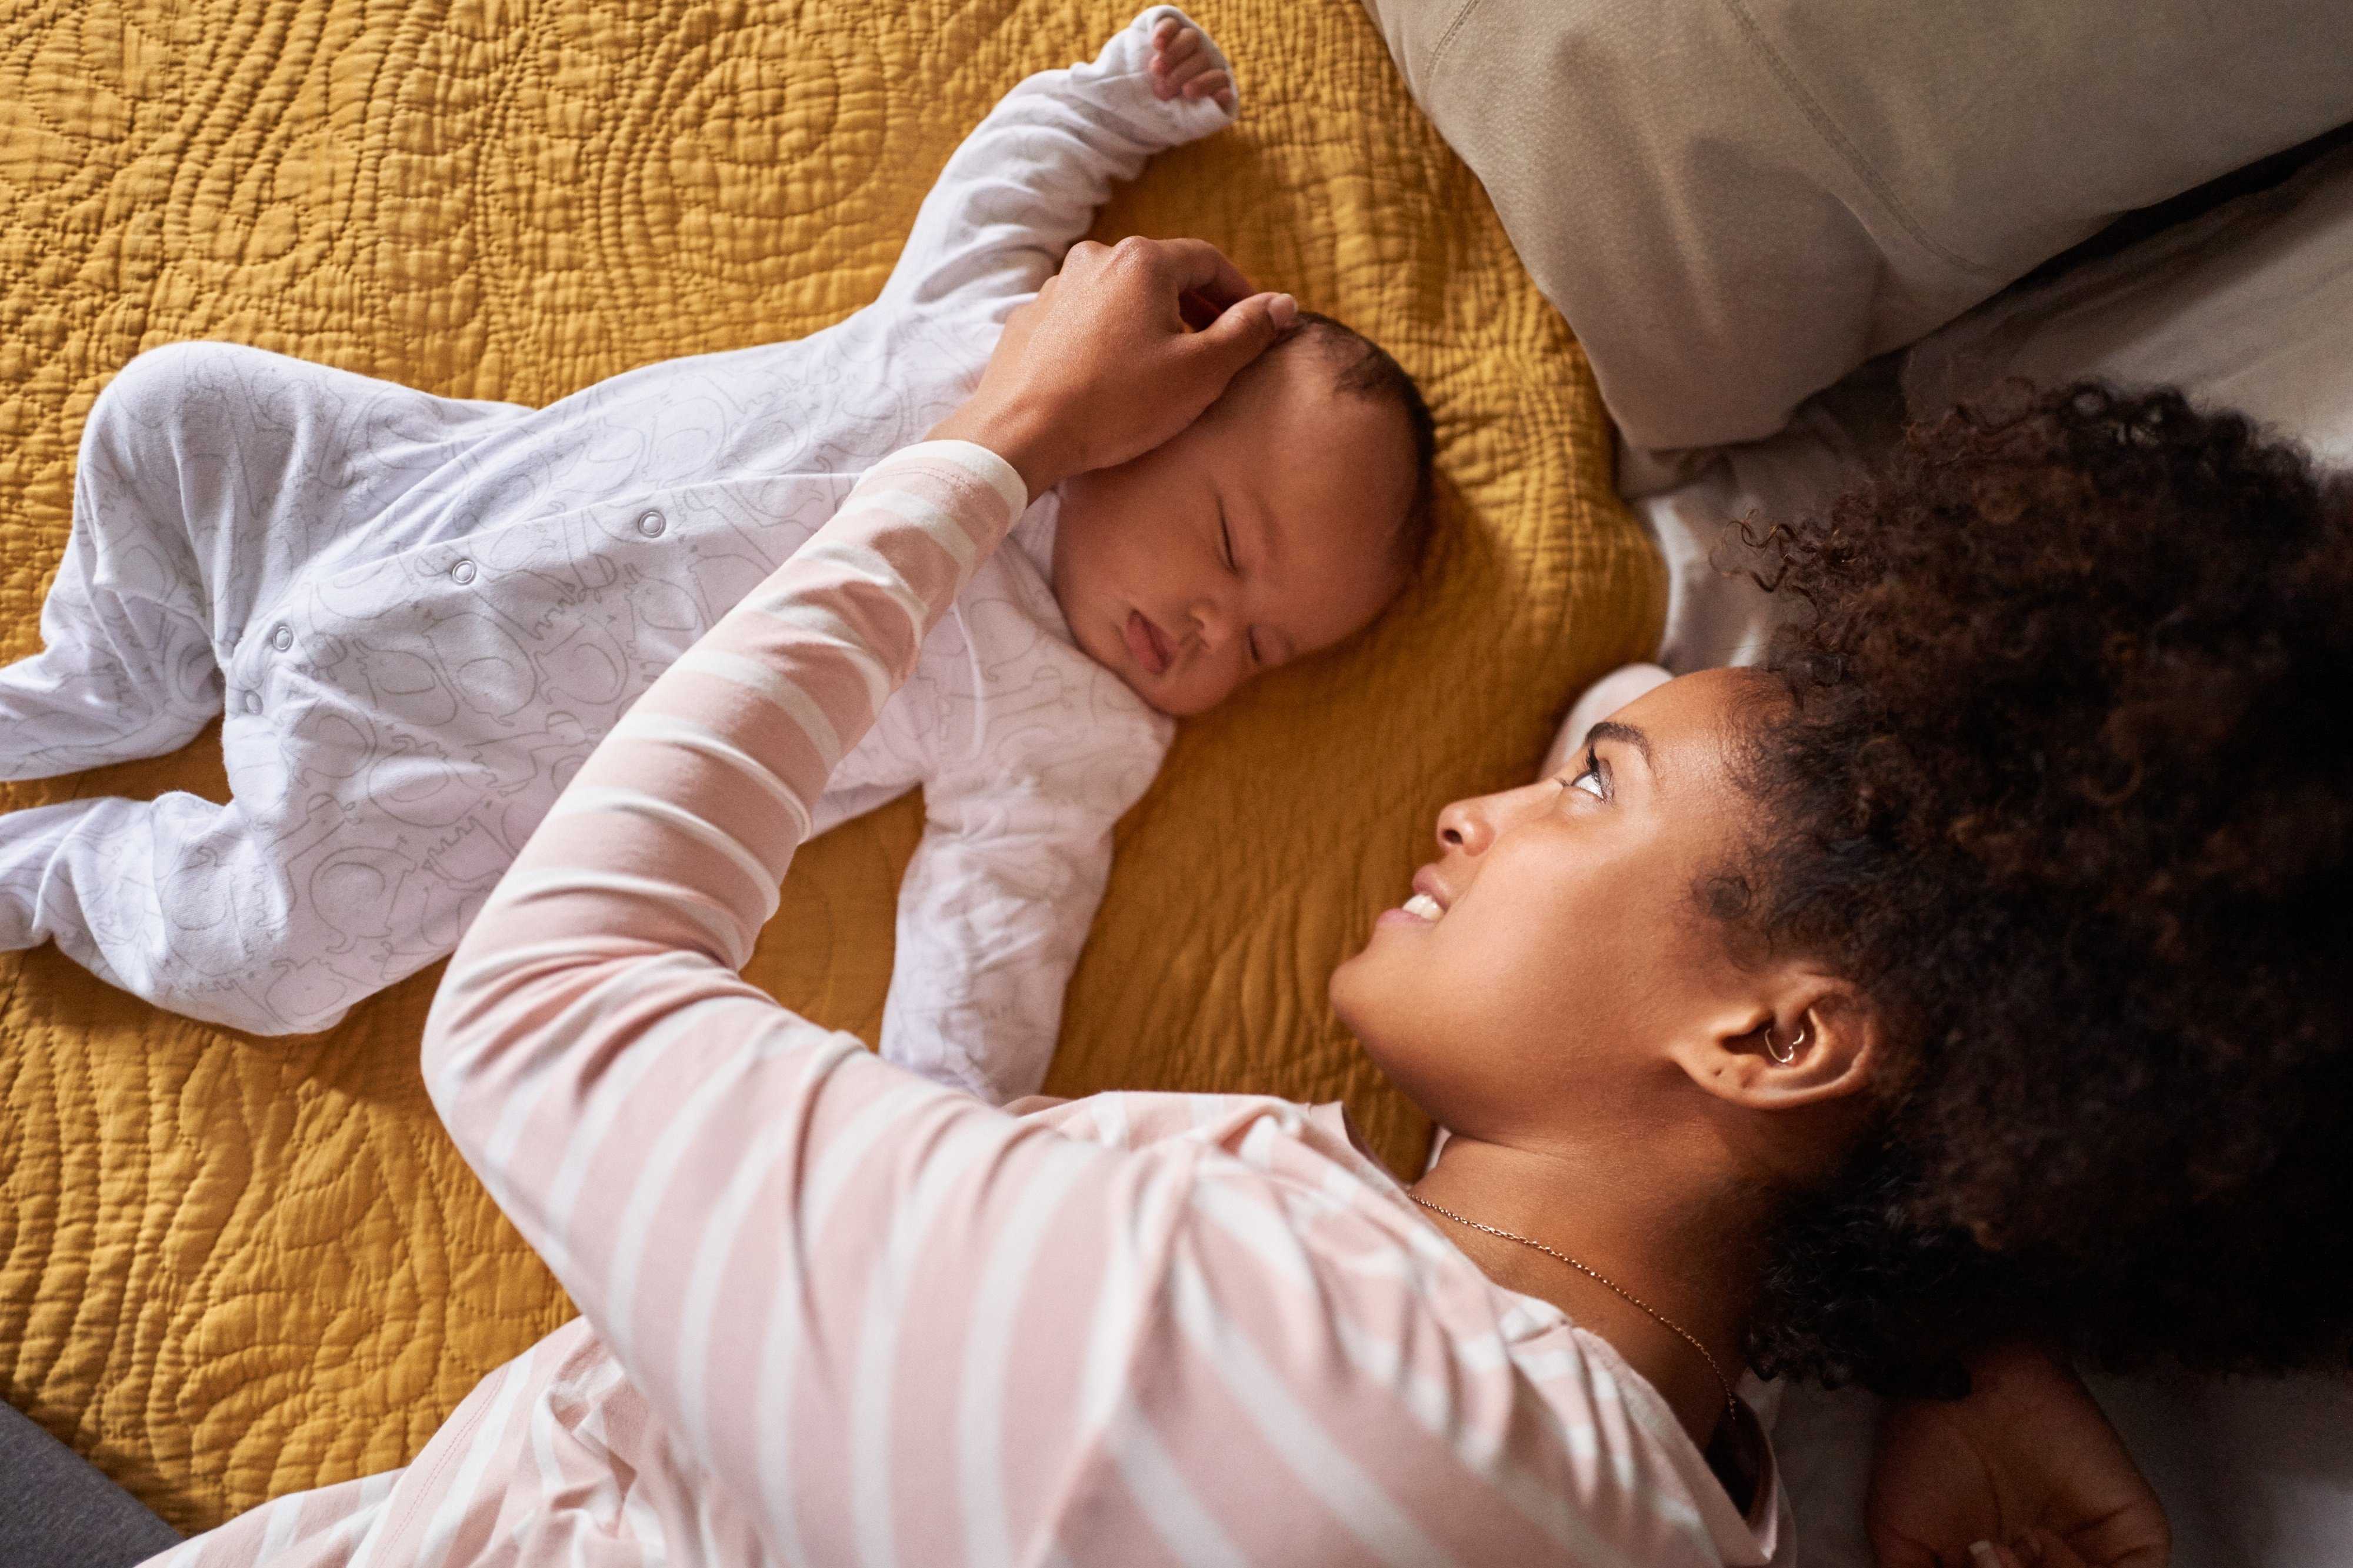 Совместный сон с ребенком: за и против, советы доктора комаровского